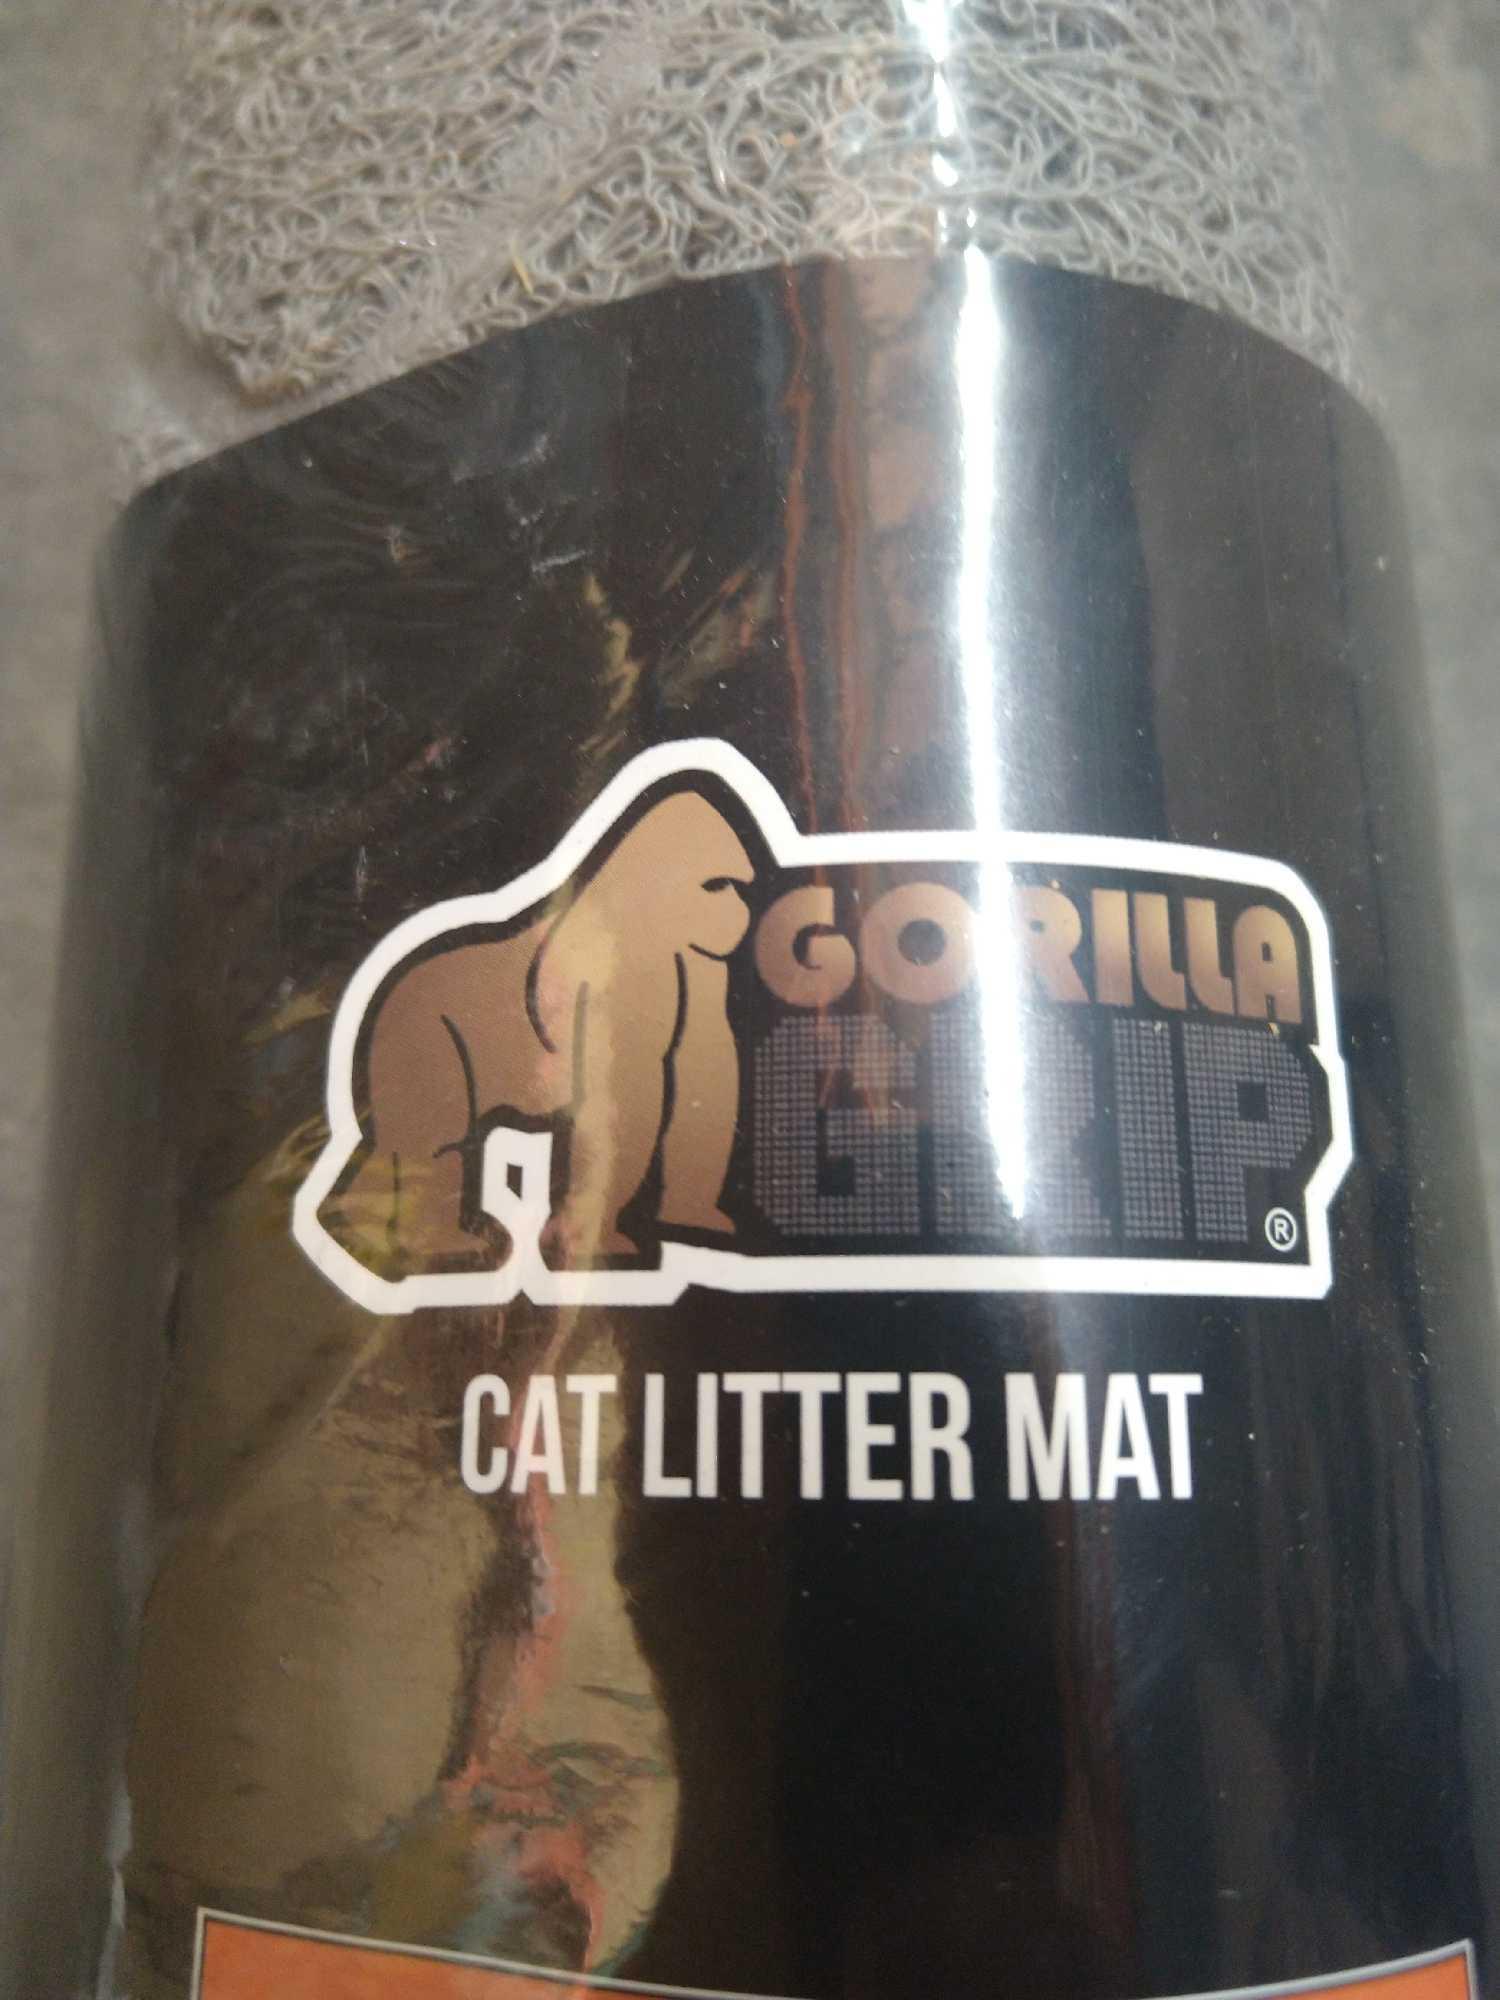 The Original Gorilla Grip 100% Waterproof Cat Litter Box Trapping Mat 35x23, $29.99 MSRP